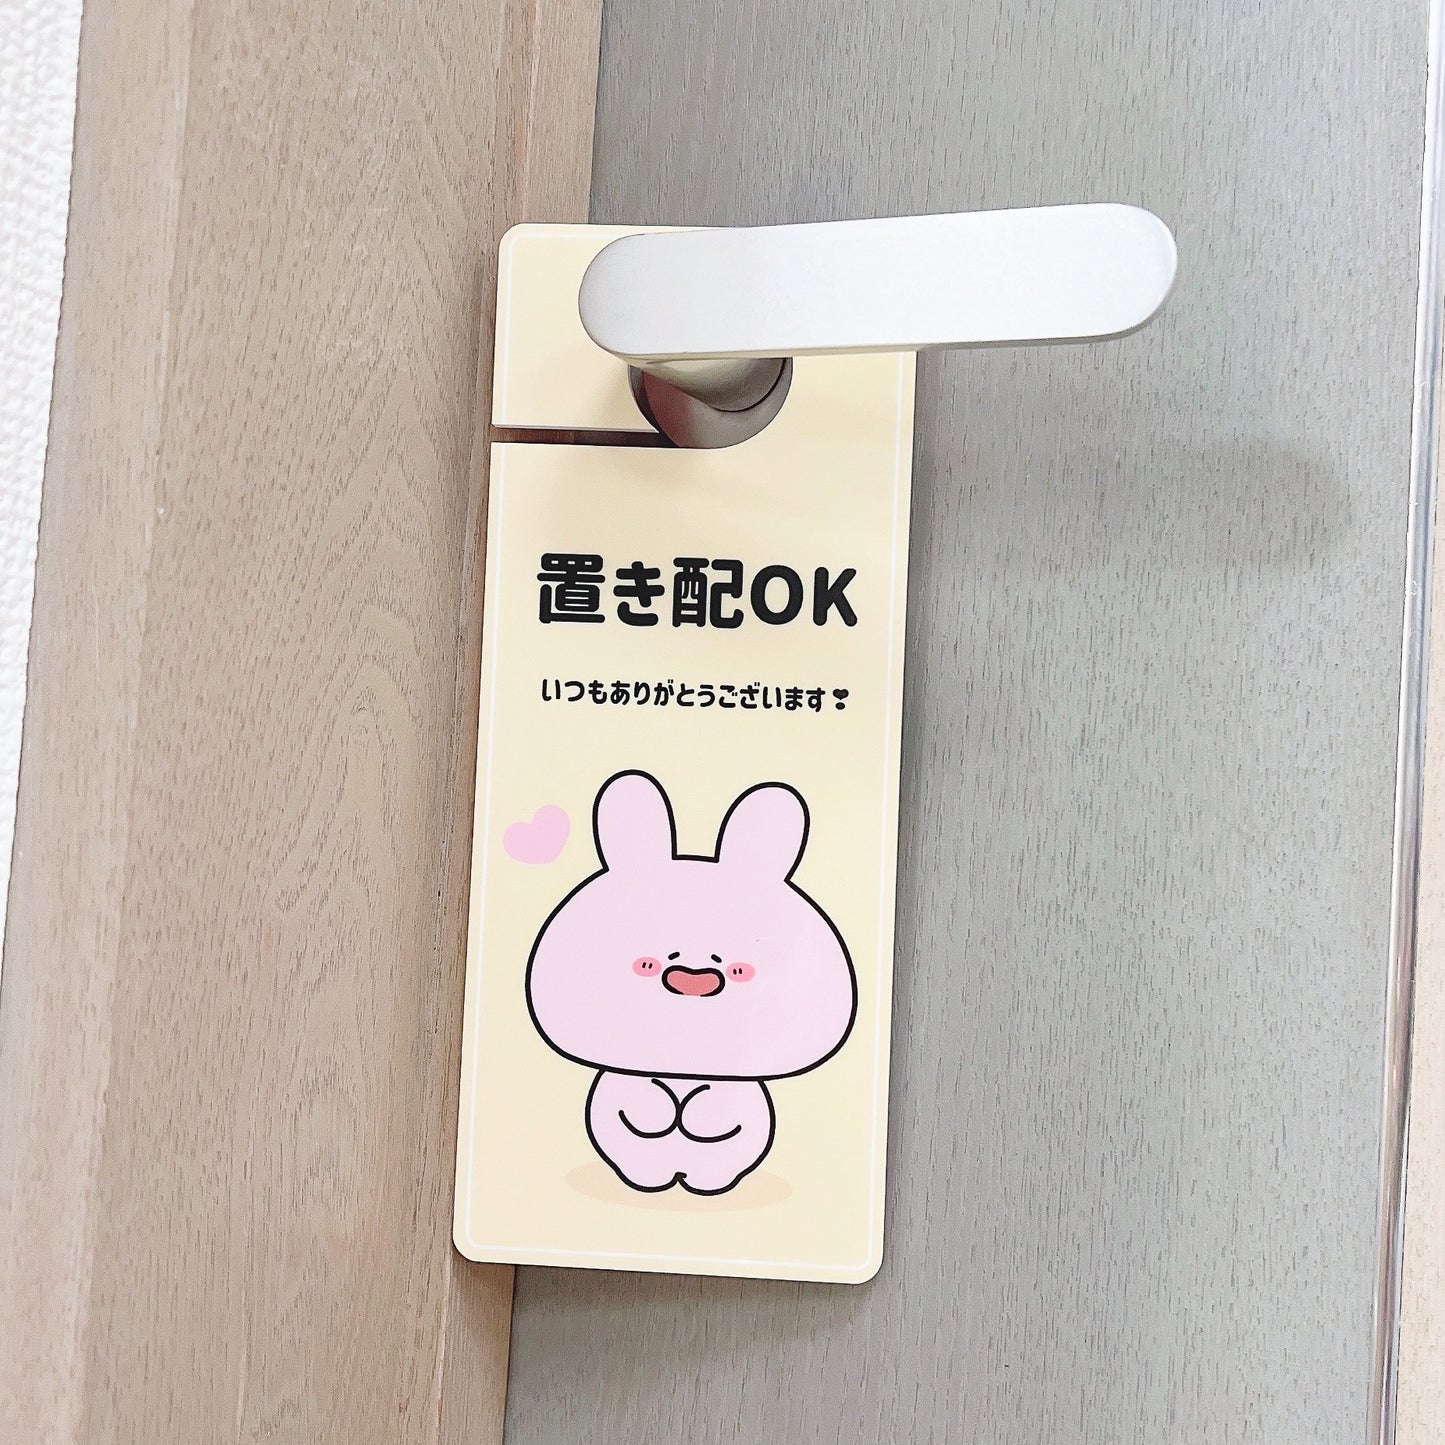 [Asamimi-chan] Etichetta della porta posizionata